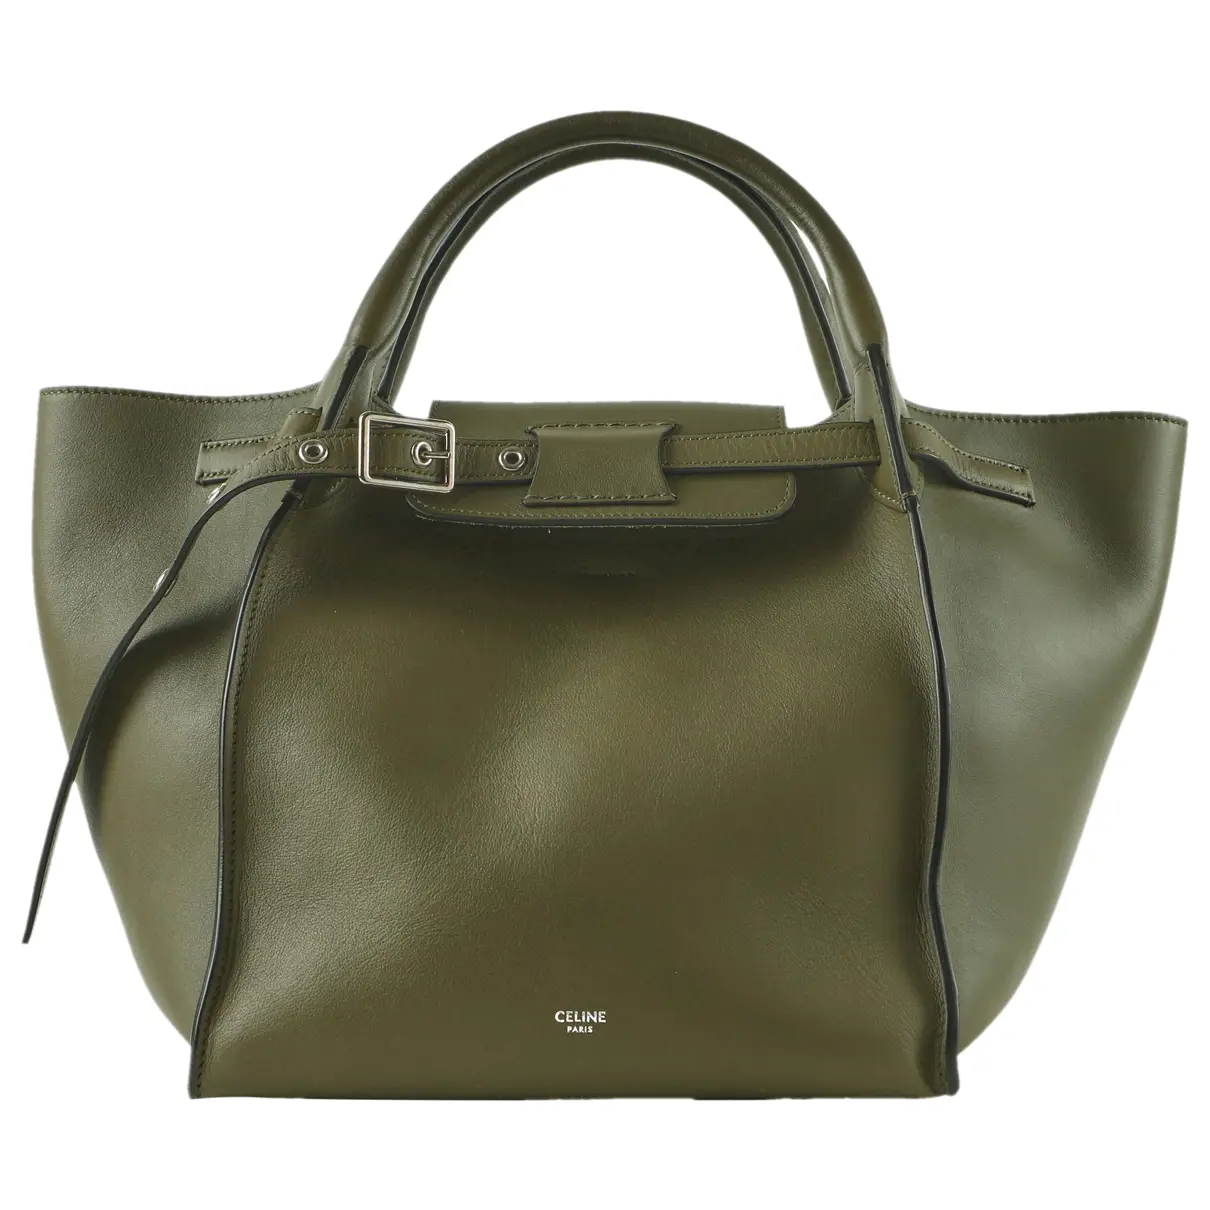 Big Bag leather handbag